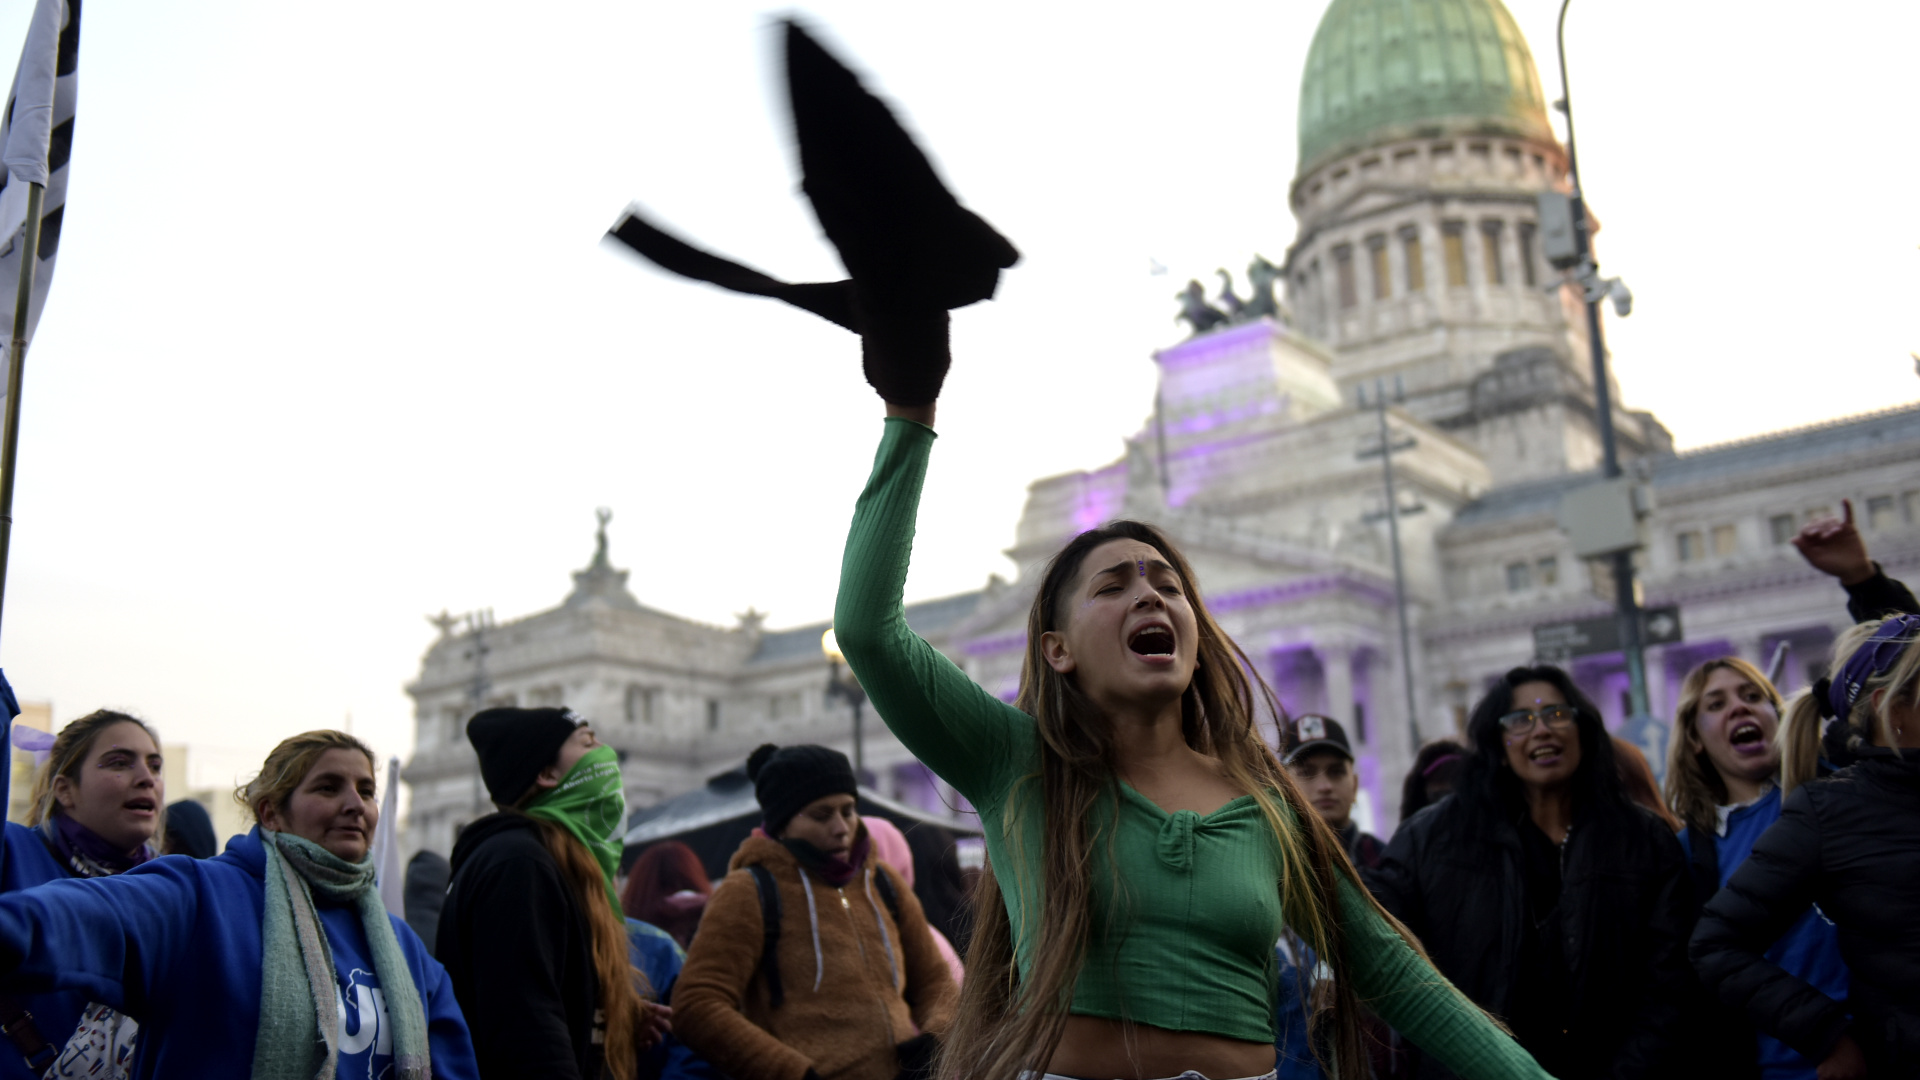 Las manifestantes reclamaron más recursos para avanzar en “la autonomía y el desarrollo económico de mujeres, lesbianas, travestis y trans”